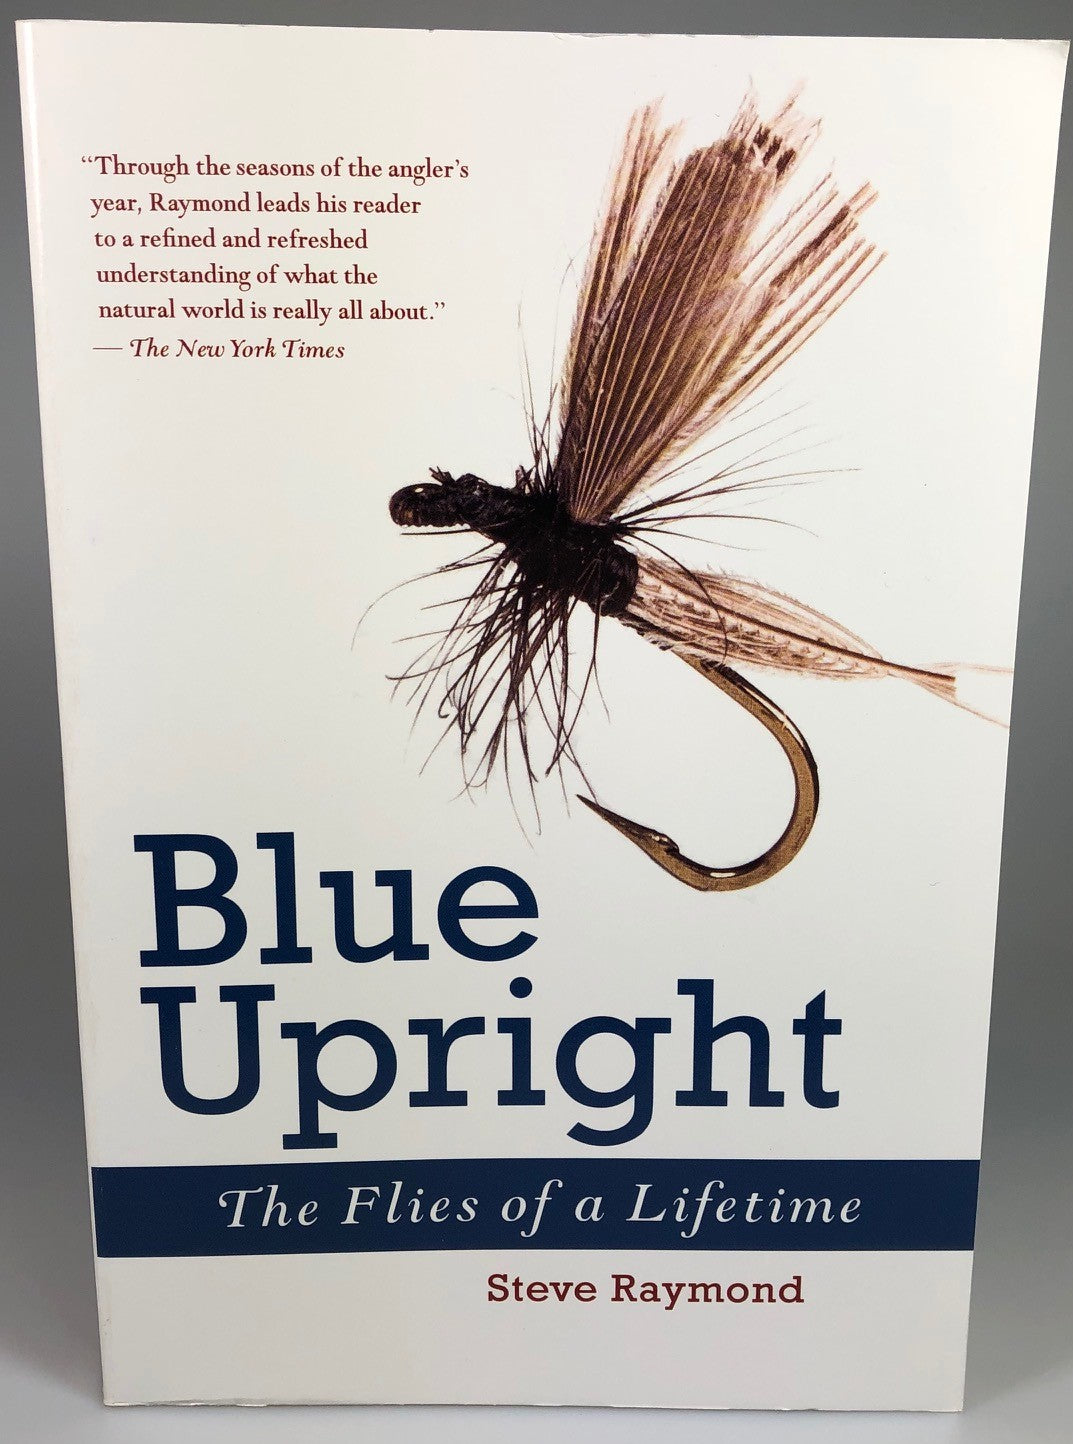 Blue Upright by Steve Raymond